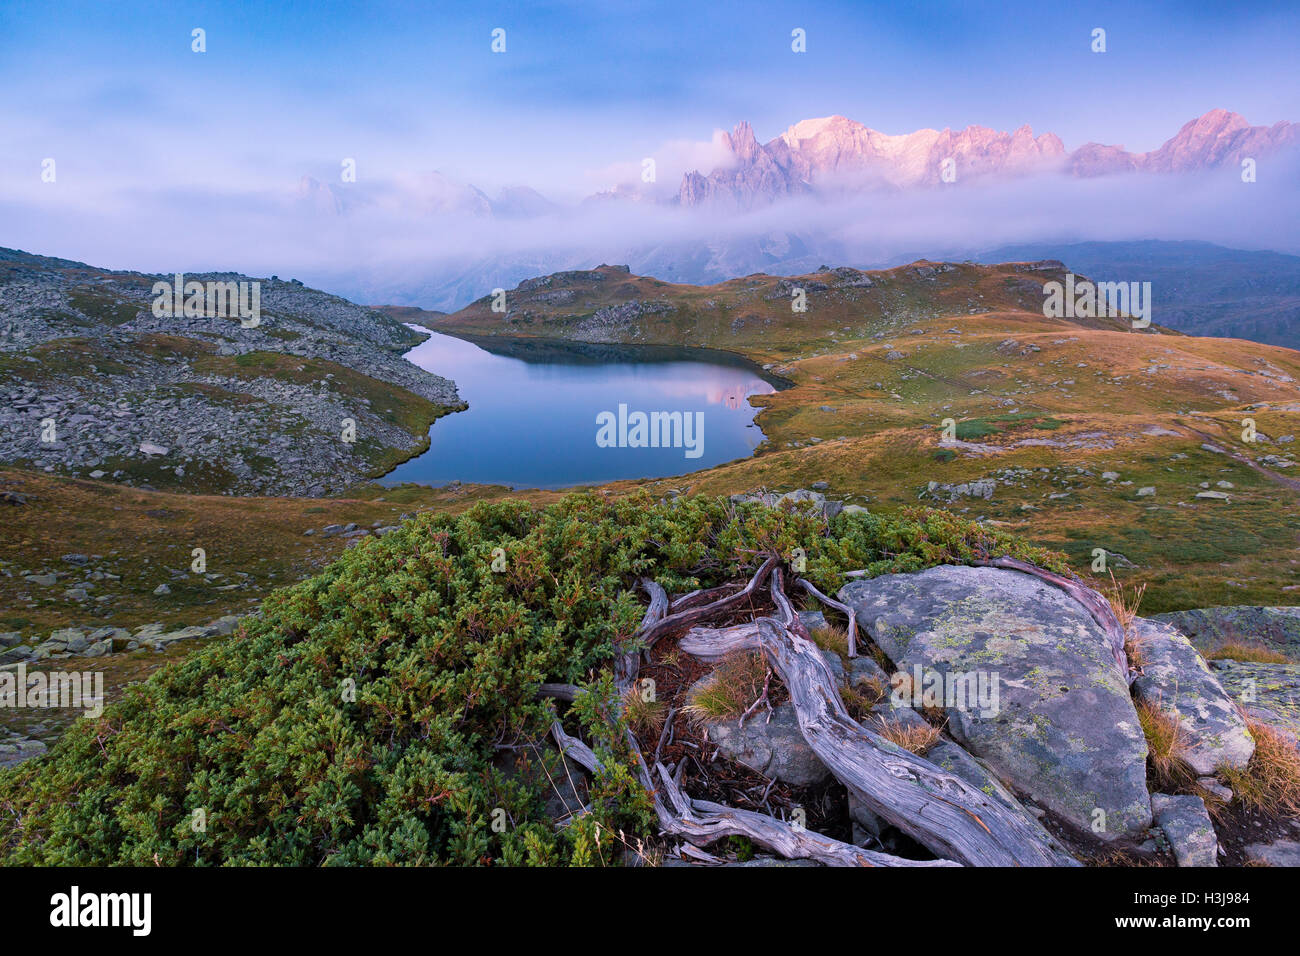 Scenic landscape view off green meadows, Juniperus plant; blue alpine lake, clouds, mountain peaks. Vallée de la Clarée. Névache, Hautes Alpes. Stock Photo